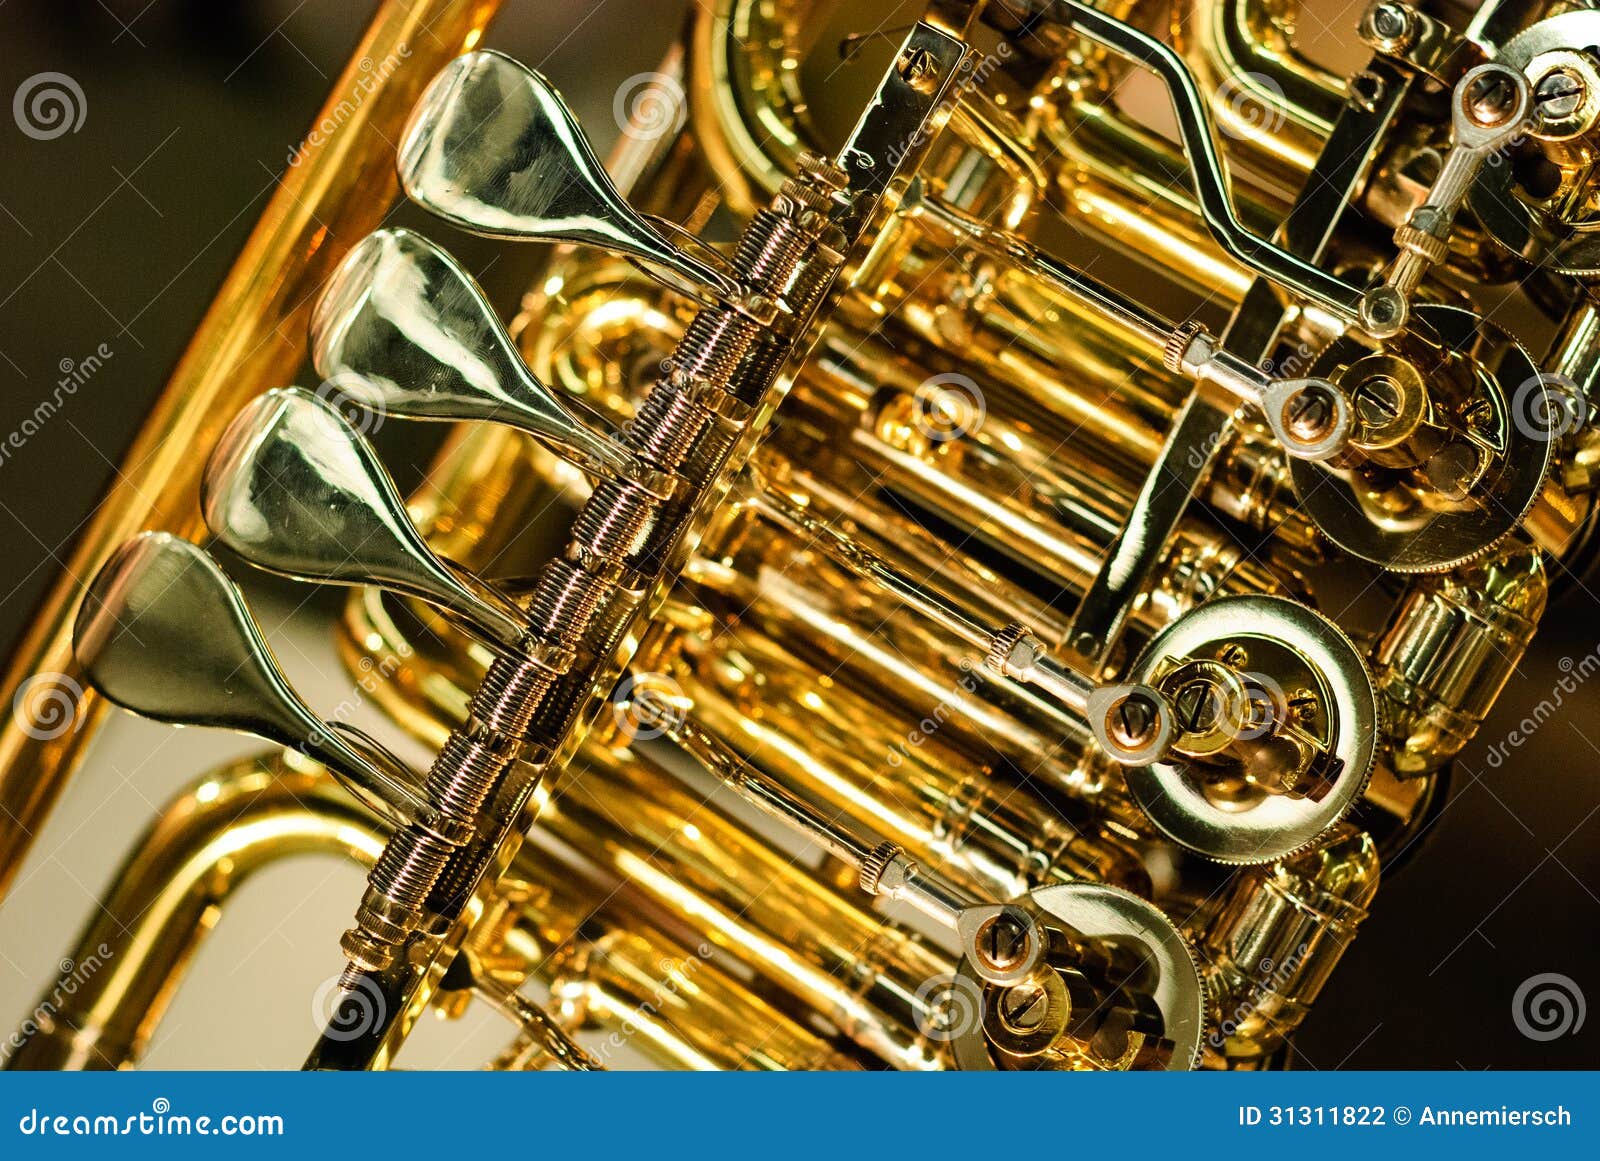 brass instrument detail